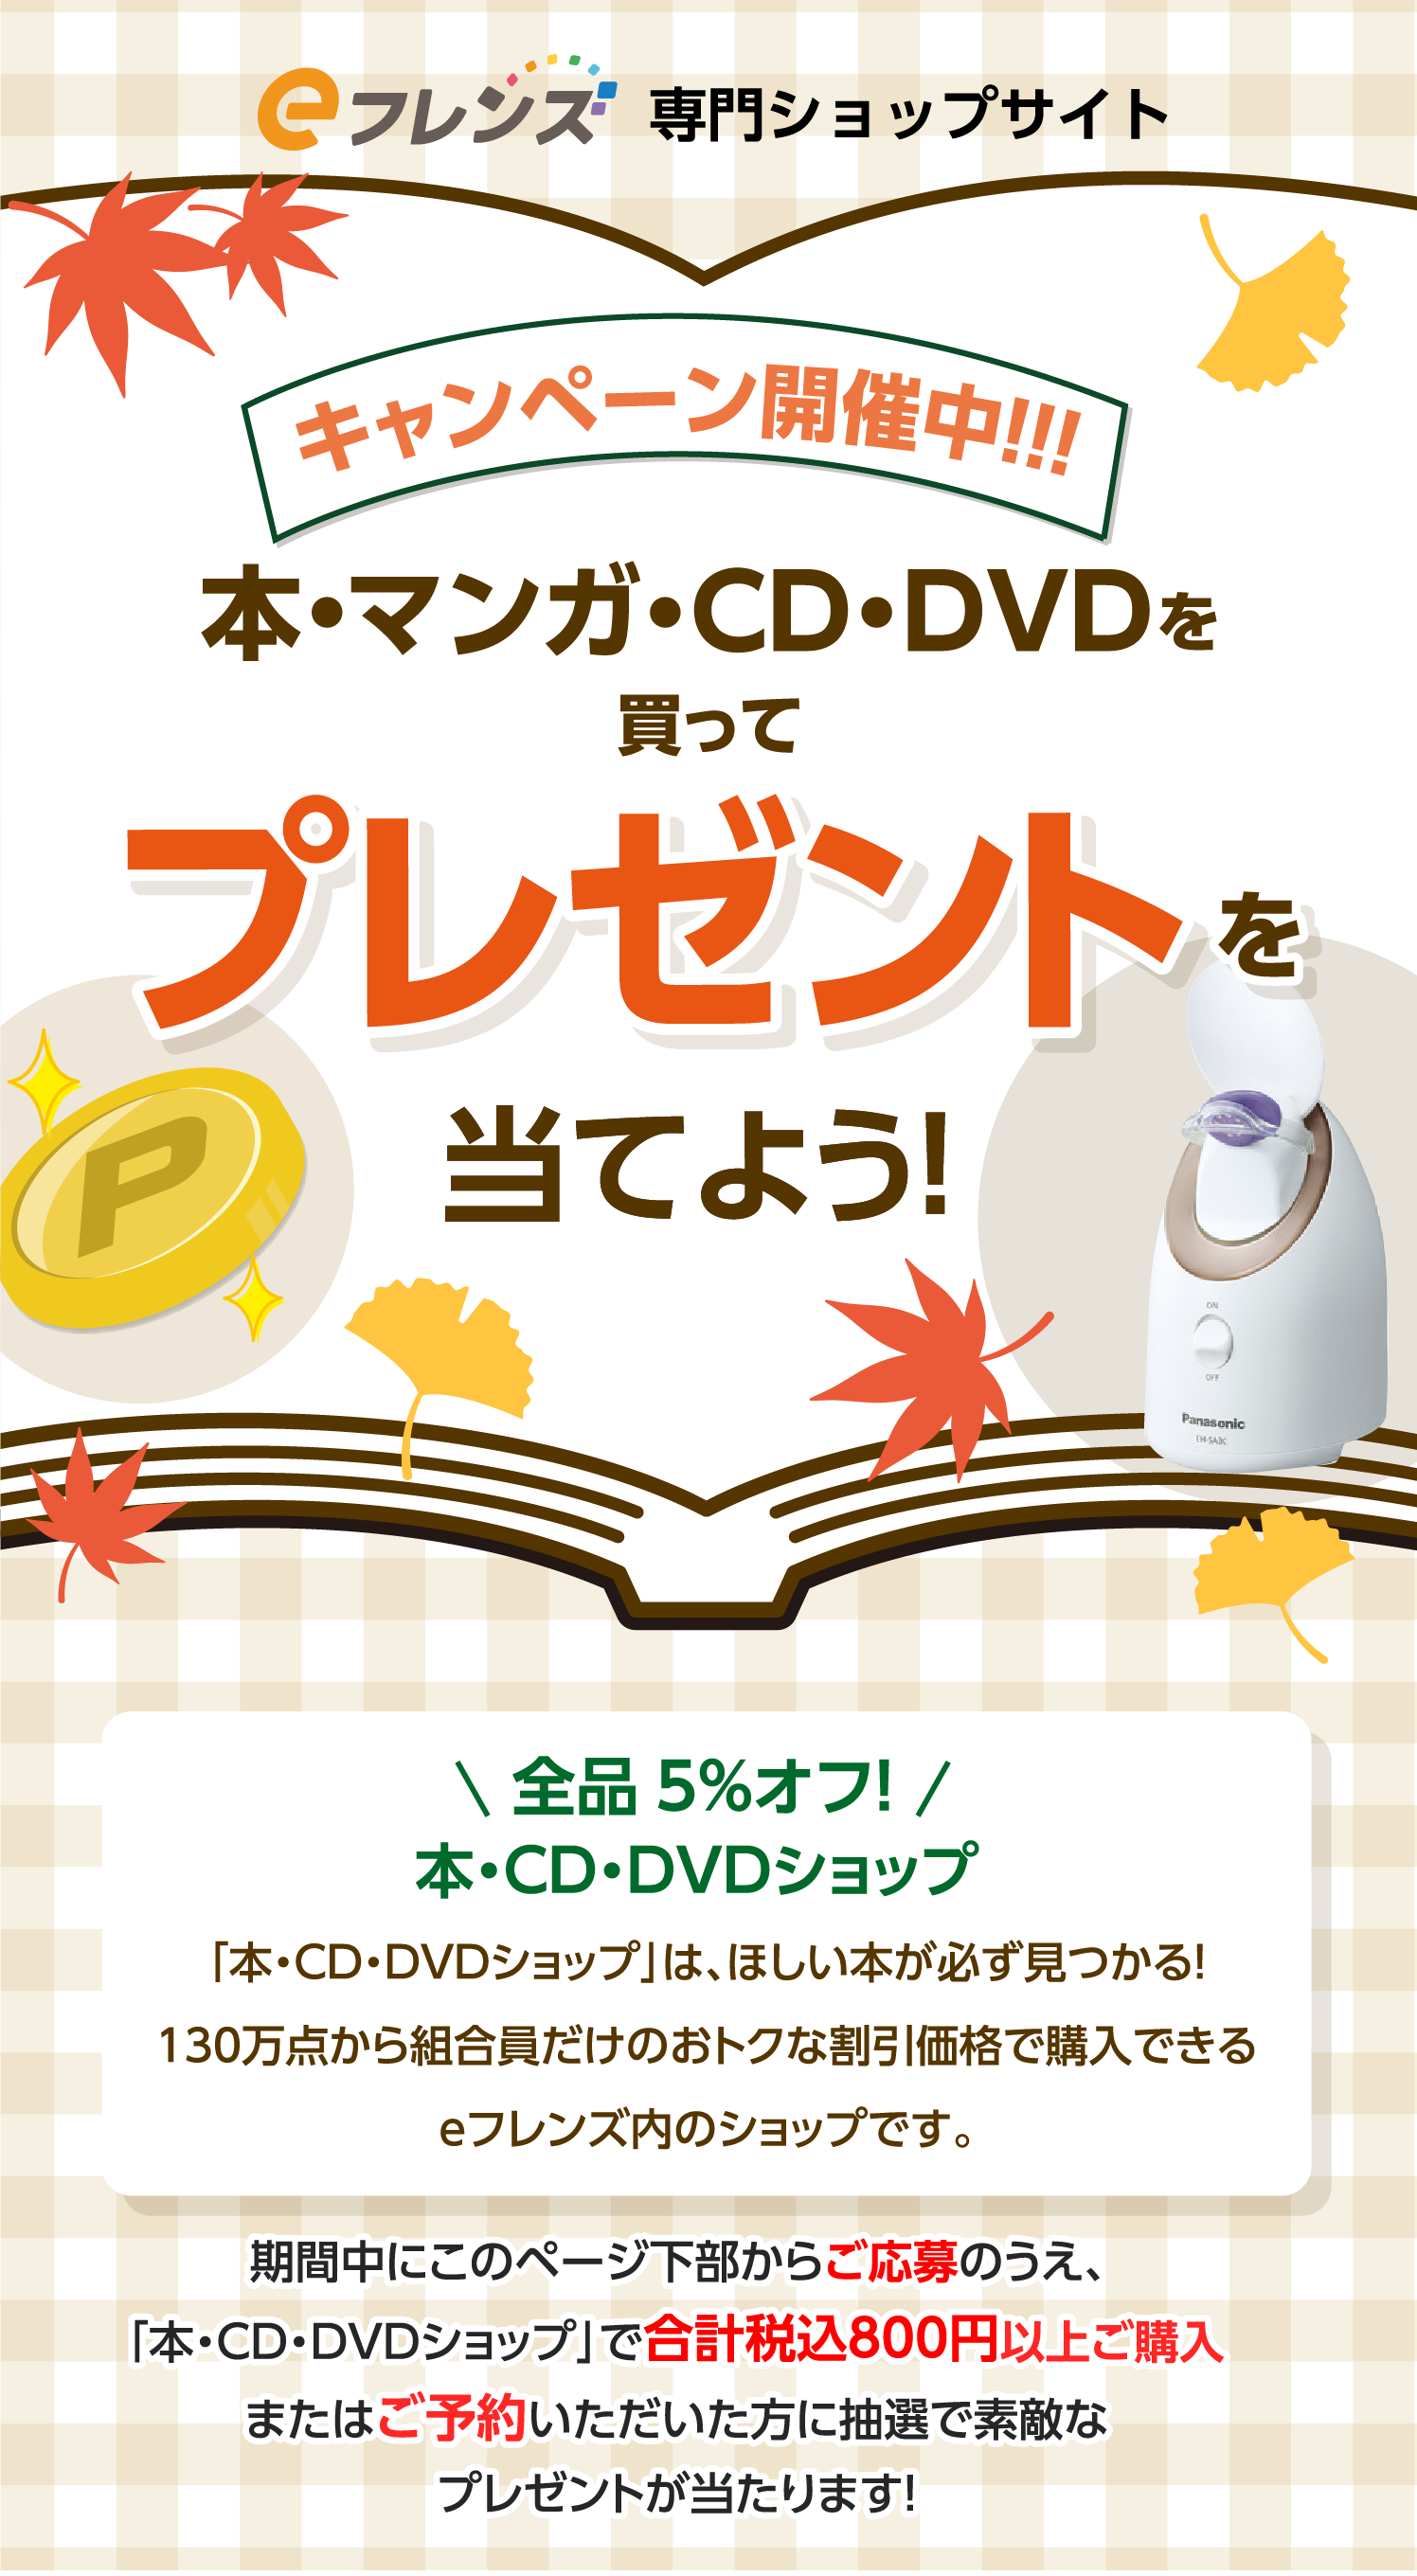 キャンペーン開催中！！！本・マンガ・CD・DVDを買ってプレゼントを当てよう！全品5%オフ！本・CD・DVDショップ「本・CD・DVDショップ」は、ほしい本が必ず見つかる！130万点から組合員だけのおトクな割引価格で購入できるｅフレンズ内のショップです。期間中にこのページ下部からご応募のうえ、「本・CD・DVDショップ」で合計税込800円以上ご購入またはご予約いただいた方に抽選で素敵なプレゼントが当たります！